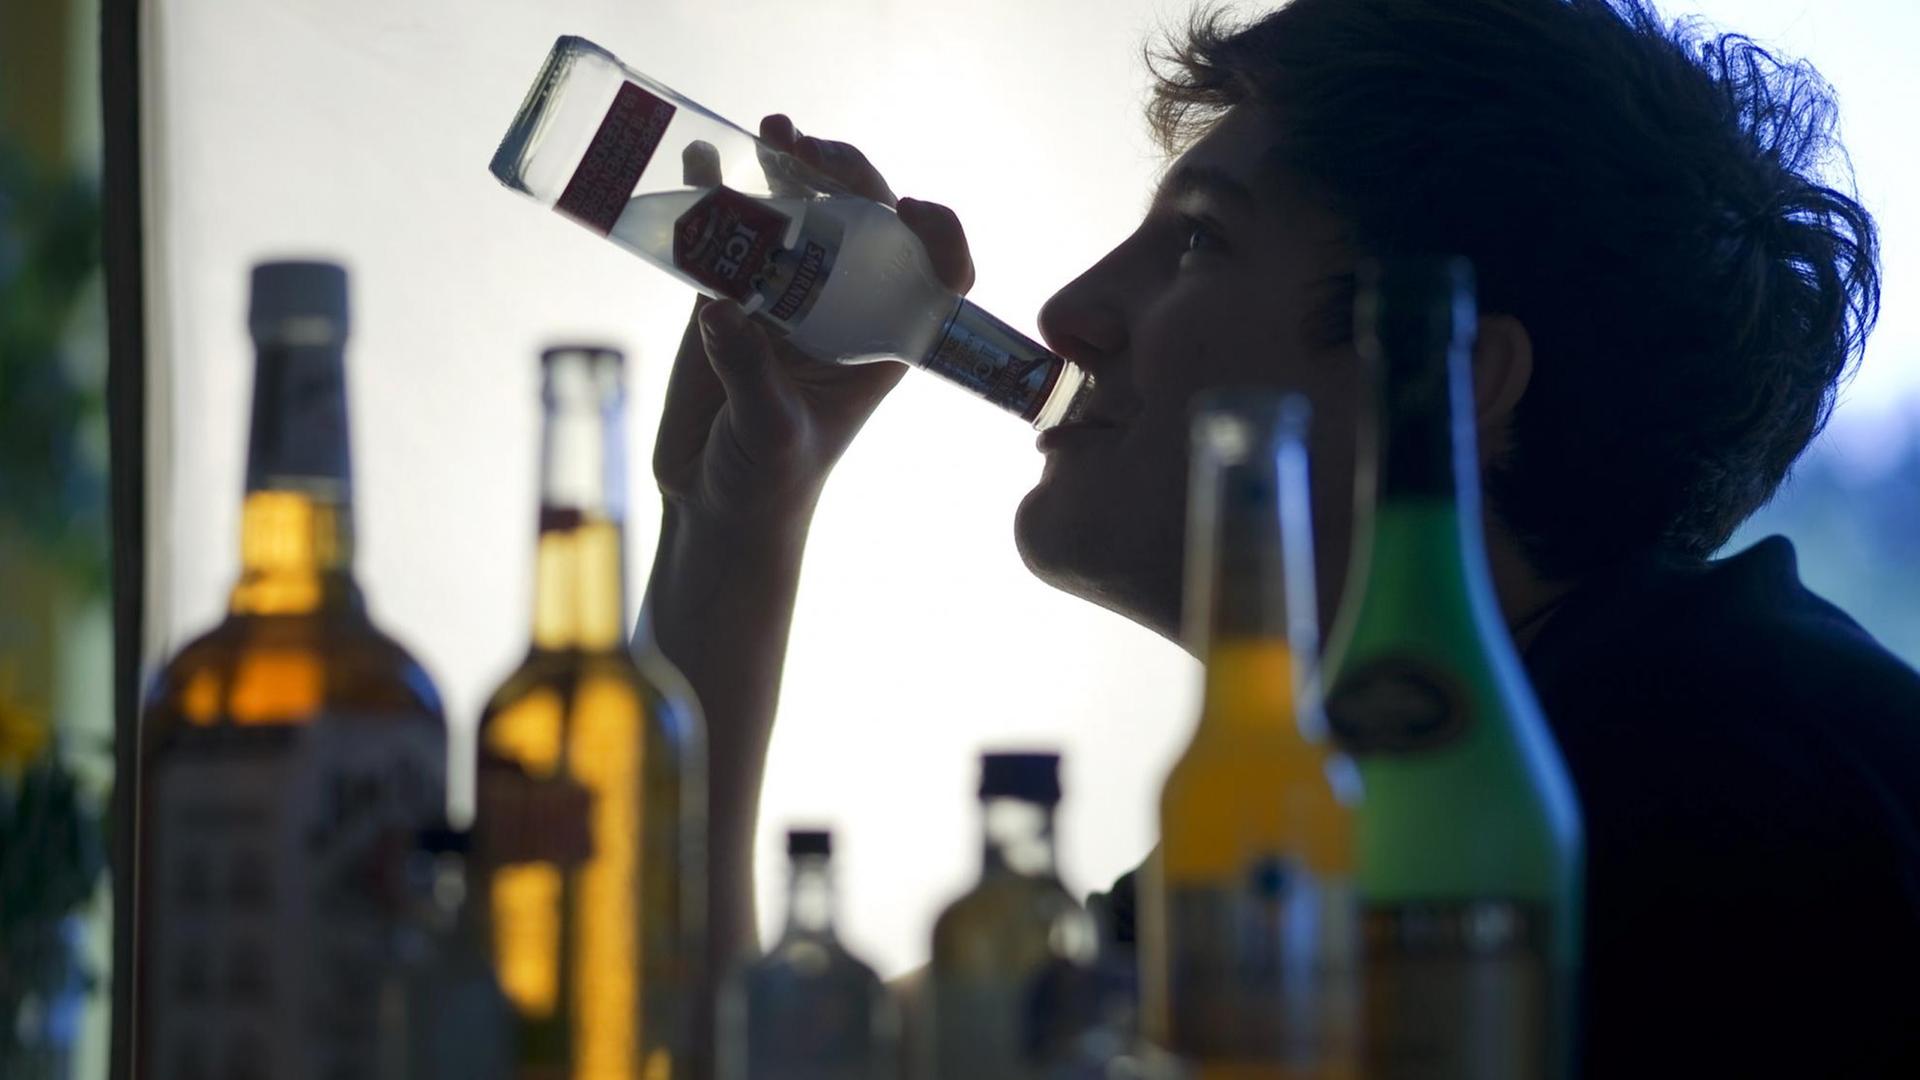 Alkoholmissbrauch - Jugendliche trinken weniger Alkohol